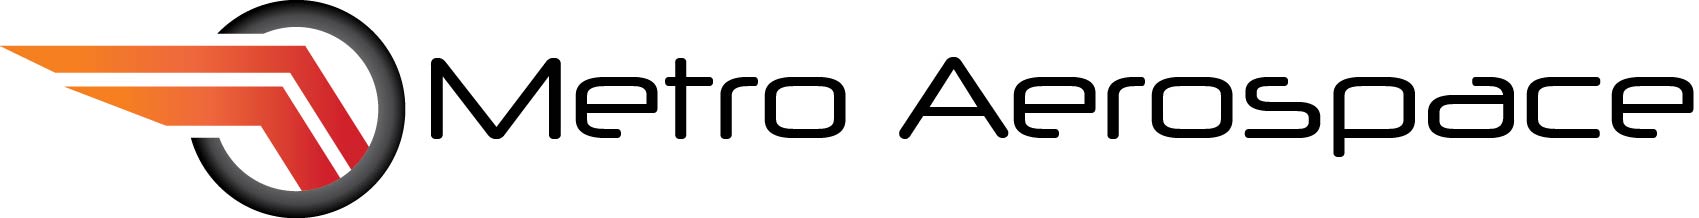 MetroAerospace Logo